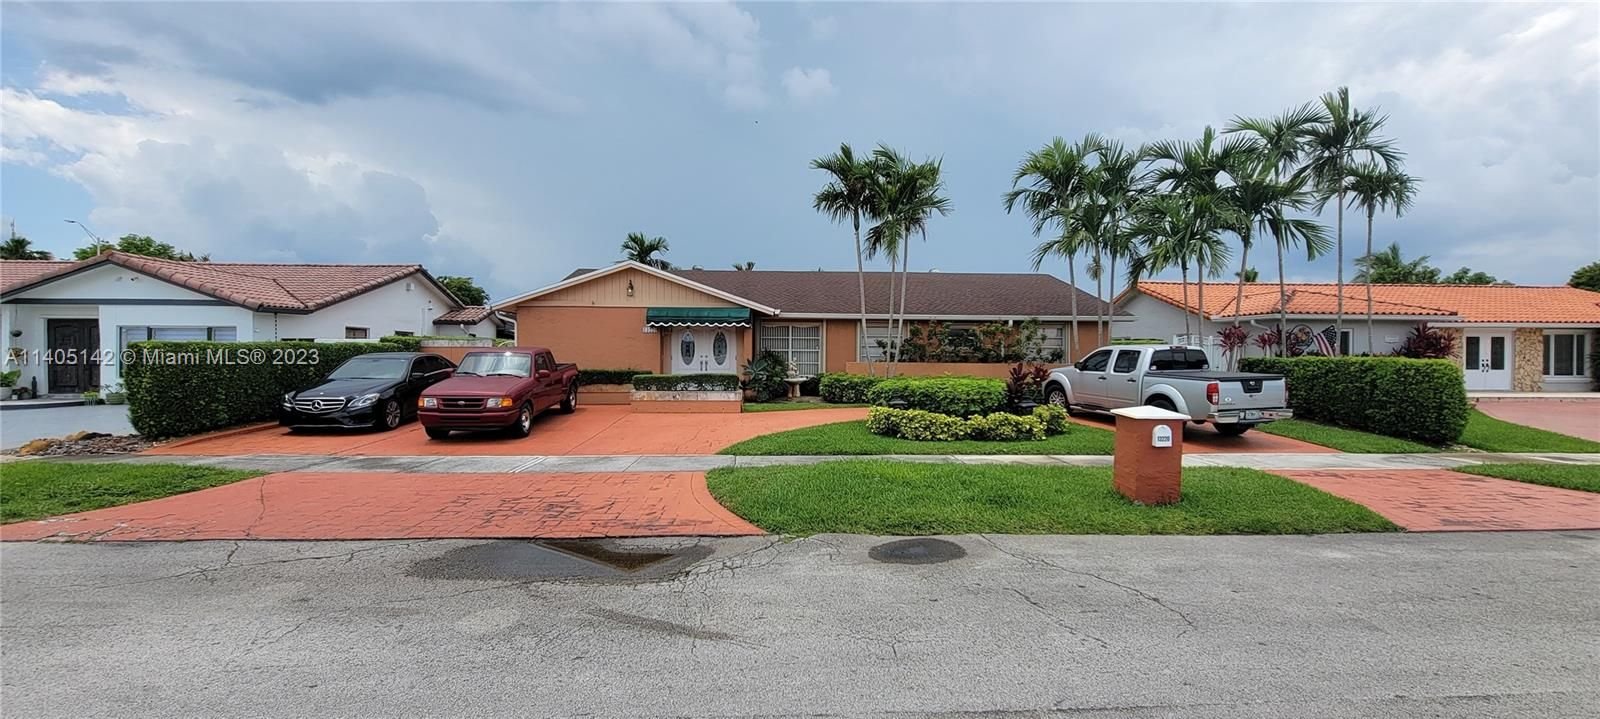 Real estate property located at 13220 46th St, Miami-Dade County, SAN SEBASTIAN UNIT NO 5, Miami, FL